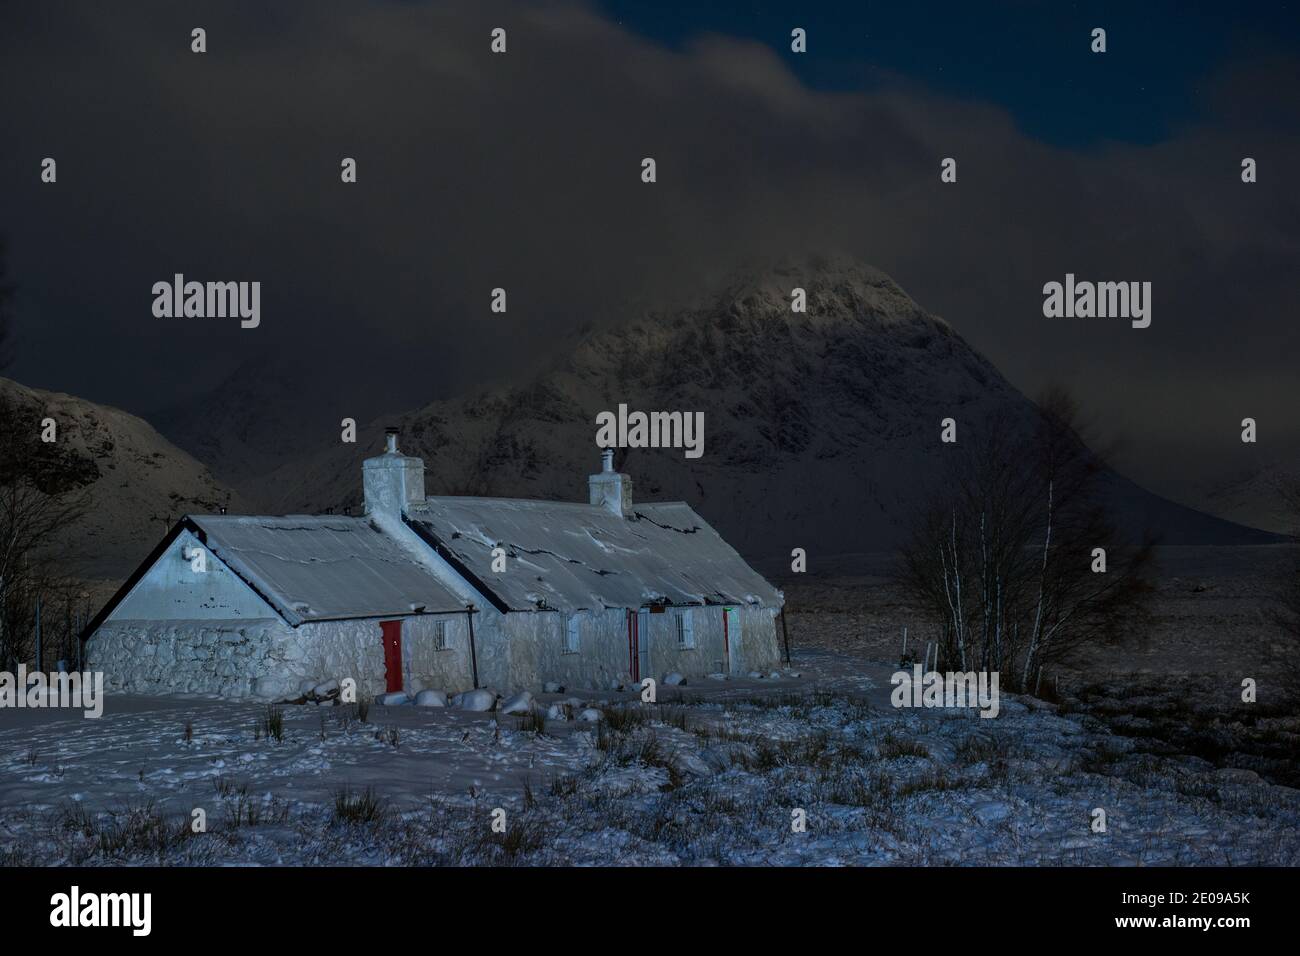 Glencoe, Escocia, Reino Unido. 30 de diciembre de 2020. Foto: Highland Cottage en Glencoe con la famosa montaña triangular de Buachaille Etive Mòr en el fondo con su cumbre envuelta en nubes y niebla helada. La nieve amarilla advierte en su lugar como más nieve con temperaturas de congelación se espera de nuevo durante la noche. Crédito: Colin Fisher/Alamy Live News Foto de stock